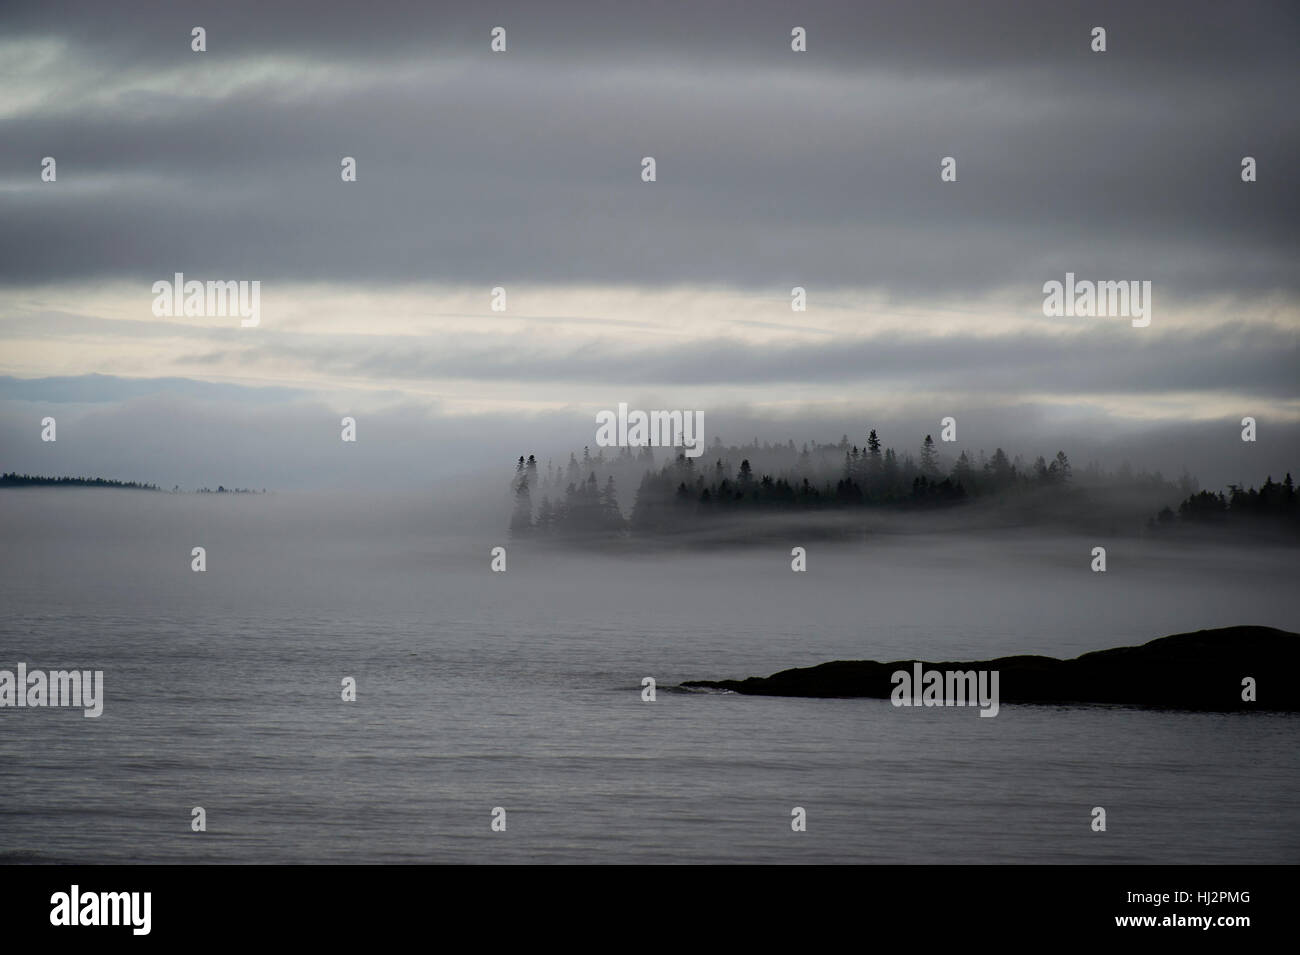 Un peuplement de pins sont visibles à travers un épais brouillard le long d'une côte accidentée. Banque D'Images